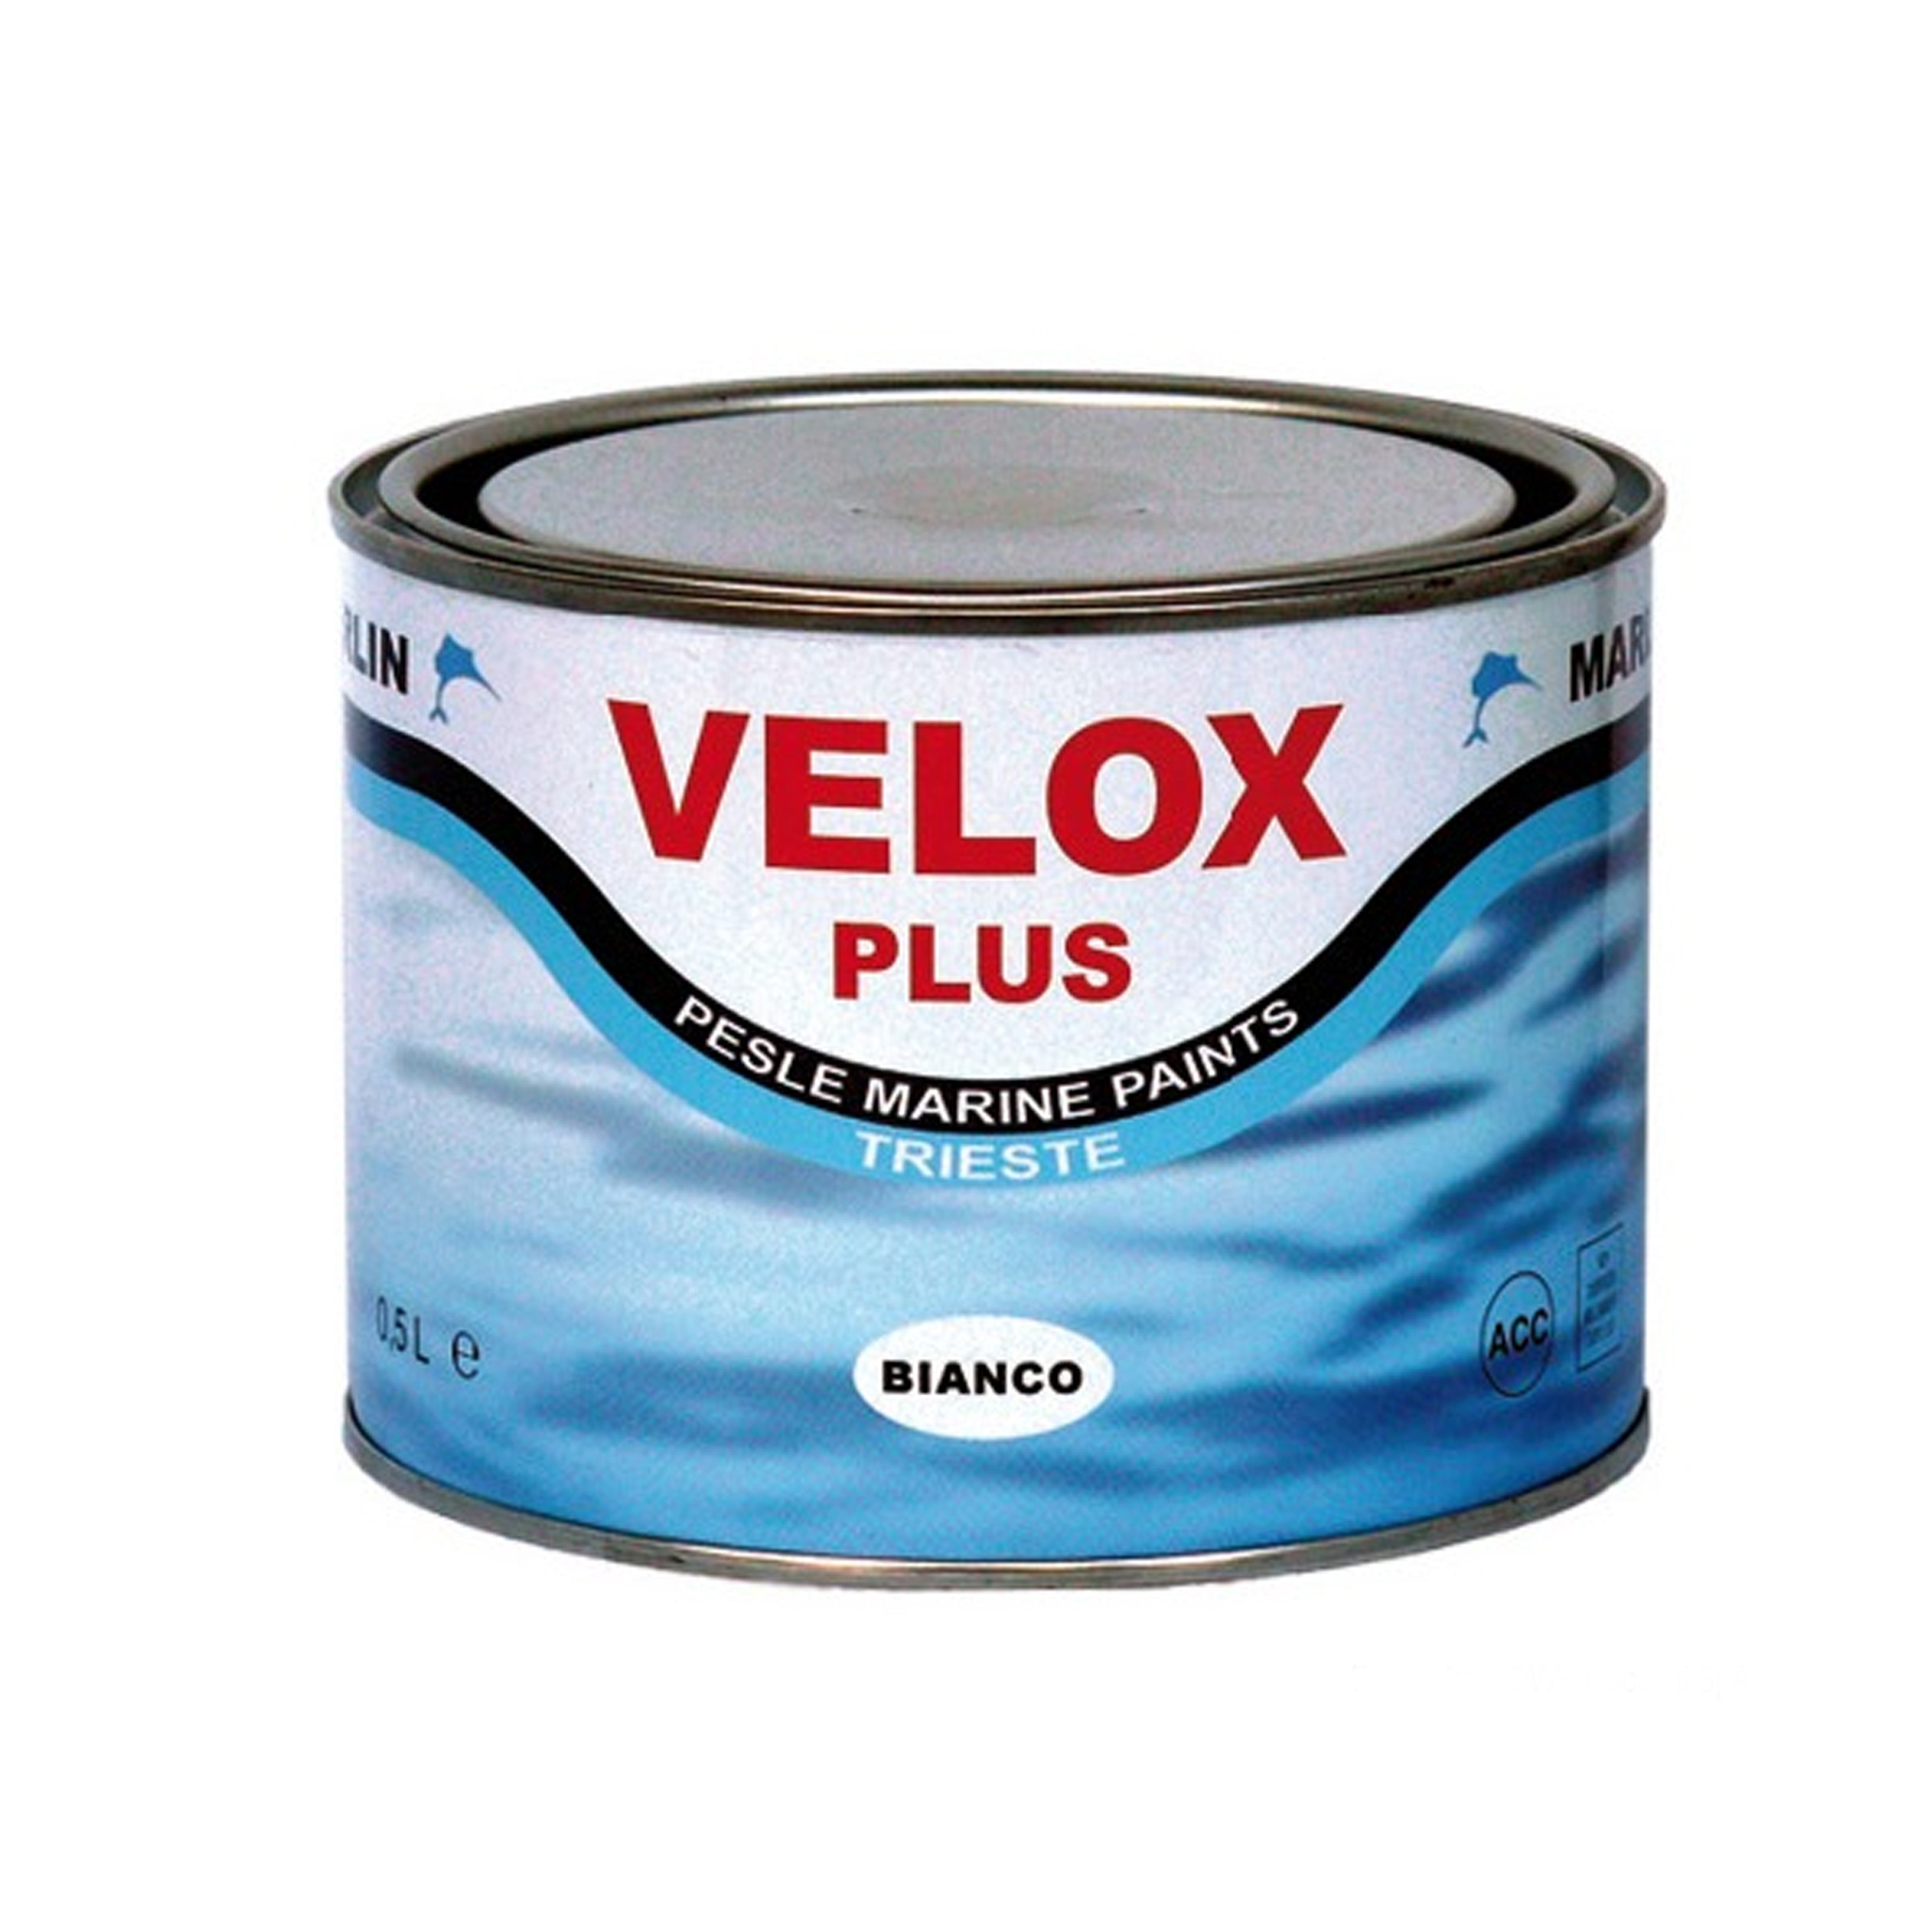 Marlin Antifouling Velox Plus